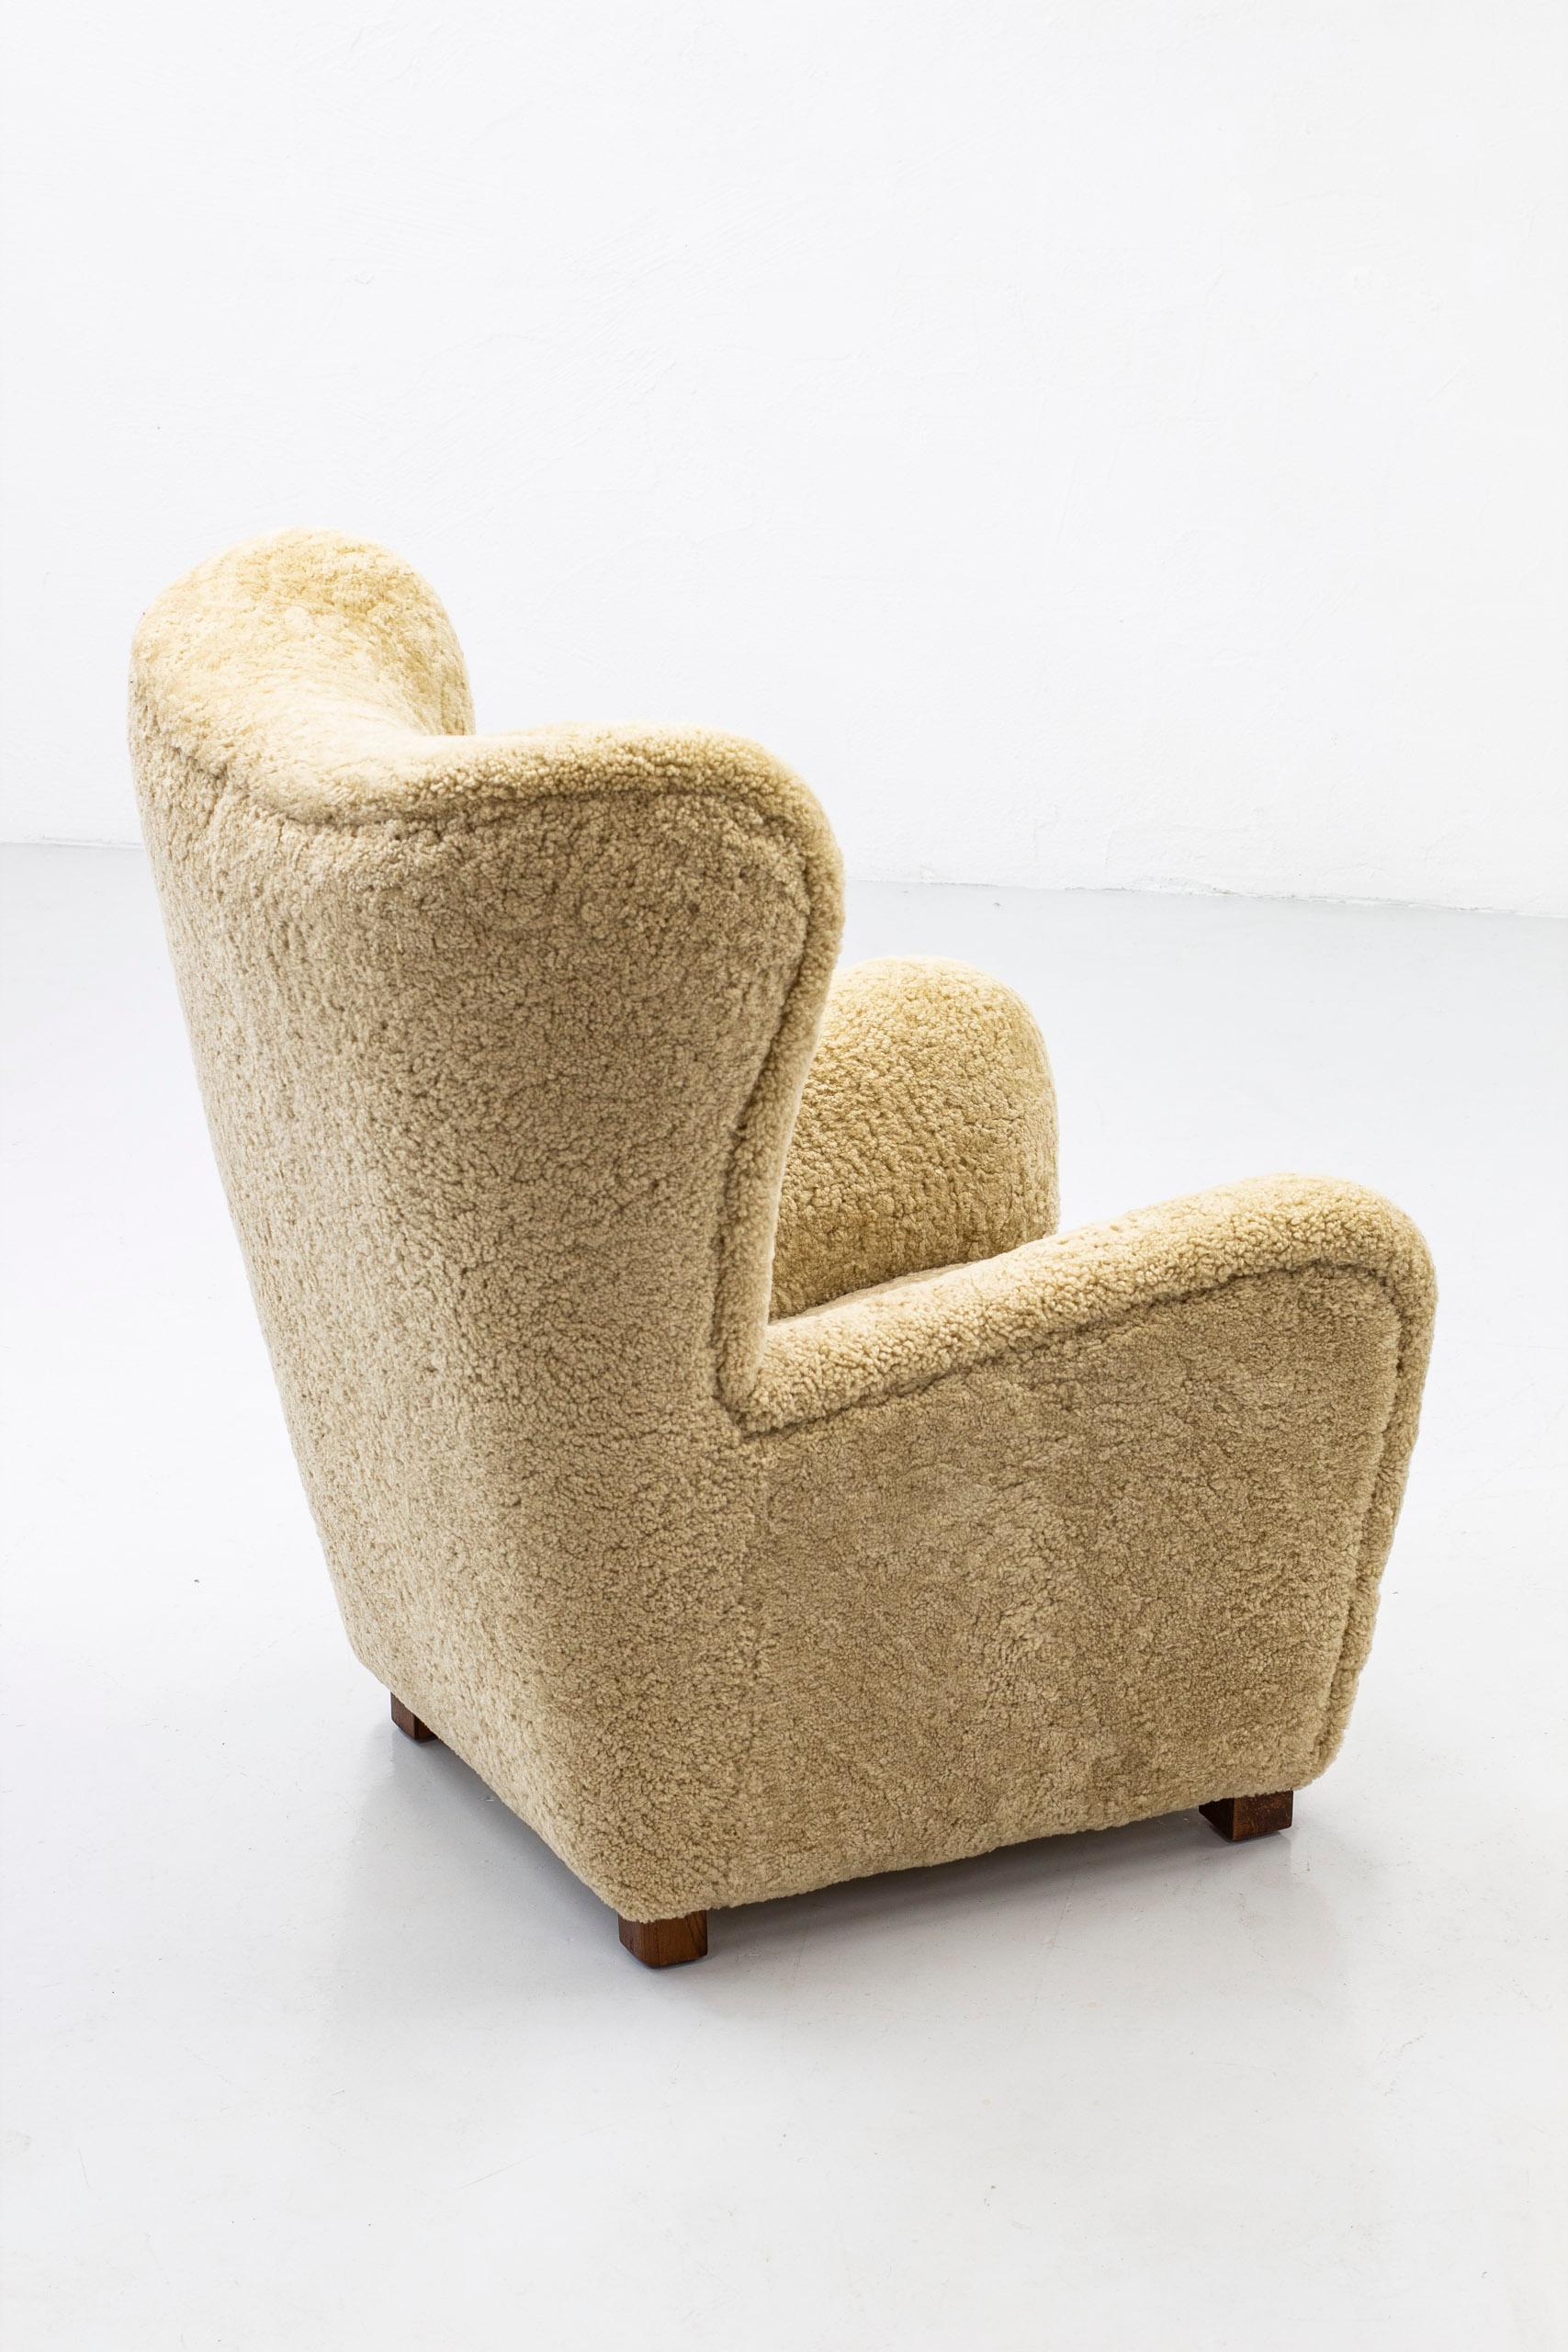 Großer Lounge-/Lehnsessel Modell 1672 von Fritz Hansen. Hergestellt in Dänemark in den 1930-40er Jahren. Dunkel gebeizte Eichenbeine und neues hellbeiges Schafsleder mit getufteten Lederknöpfen im Rücken. Sehr guter Zustand. Beine neu lackiert und